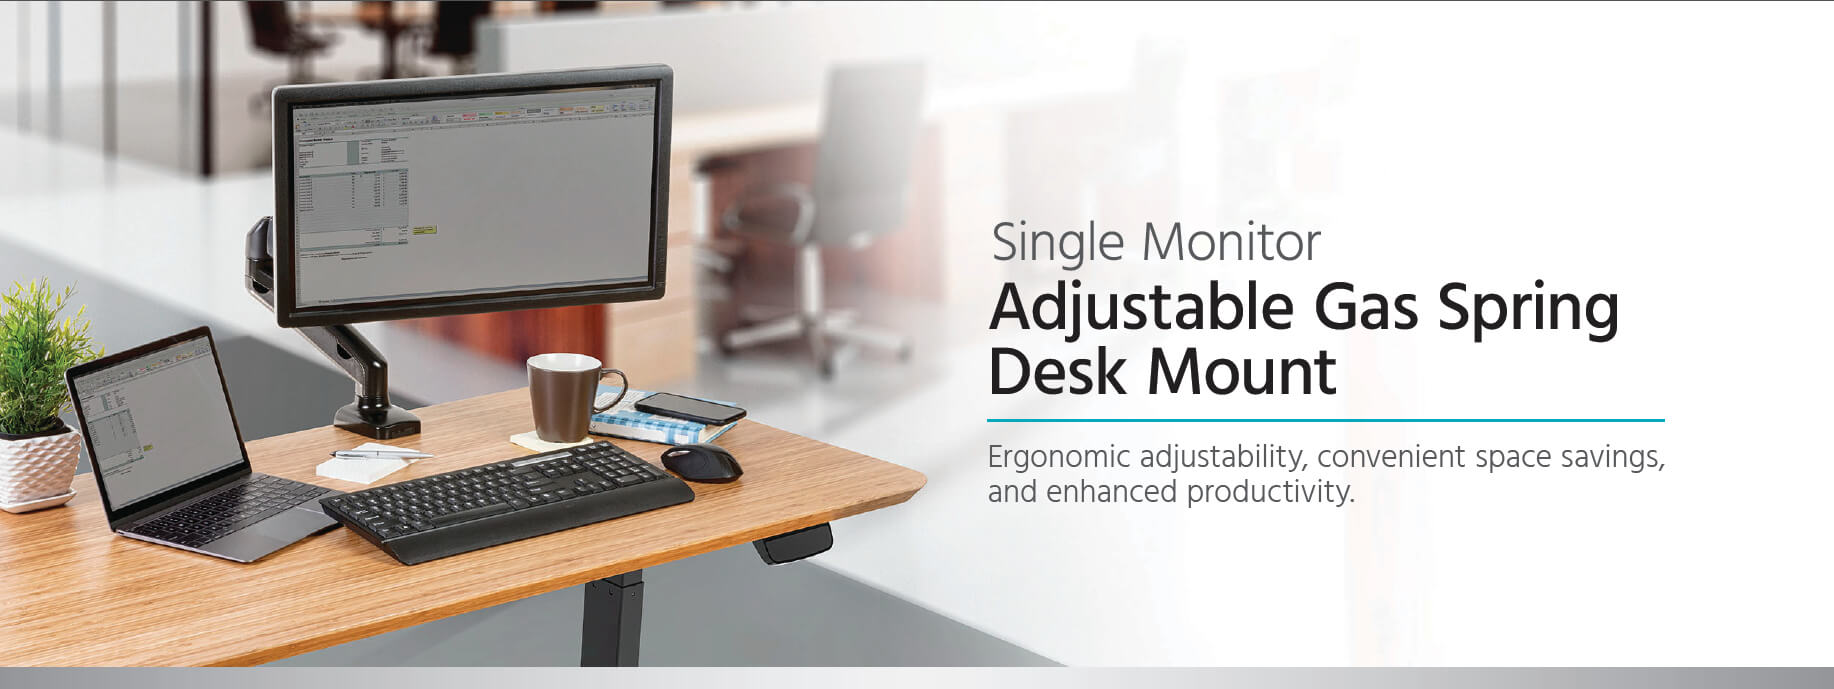 Single Monitor Adjustable Gas Spring Desk Mount